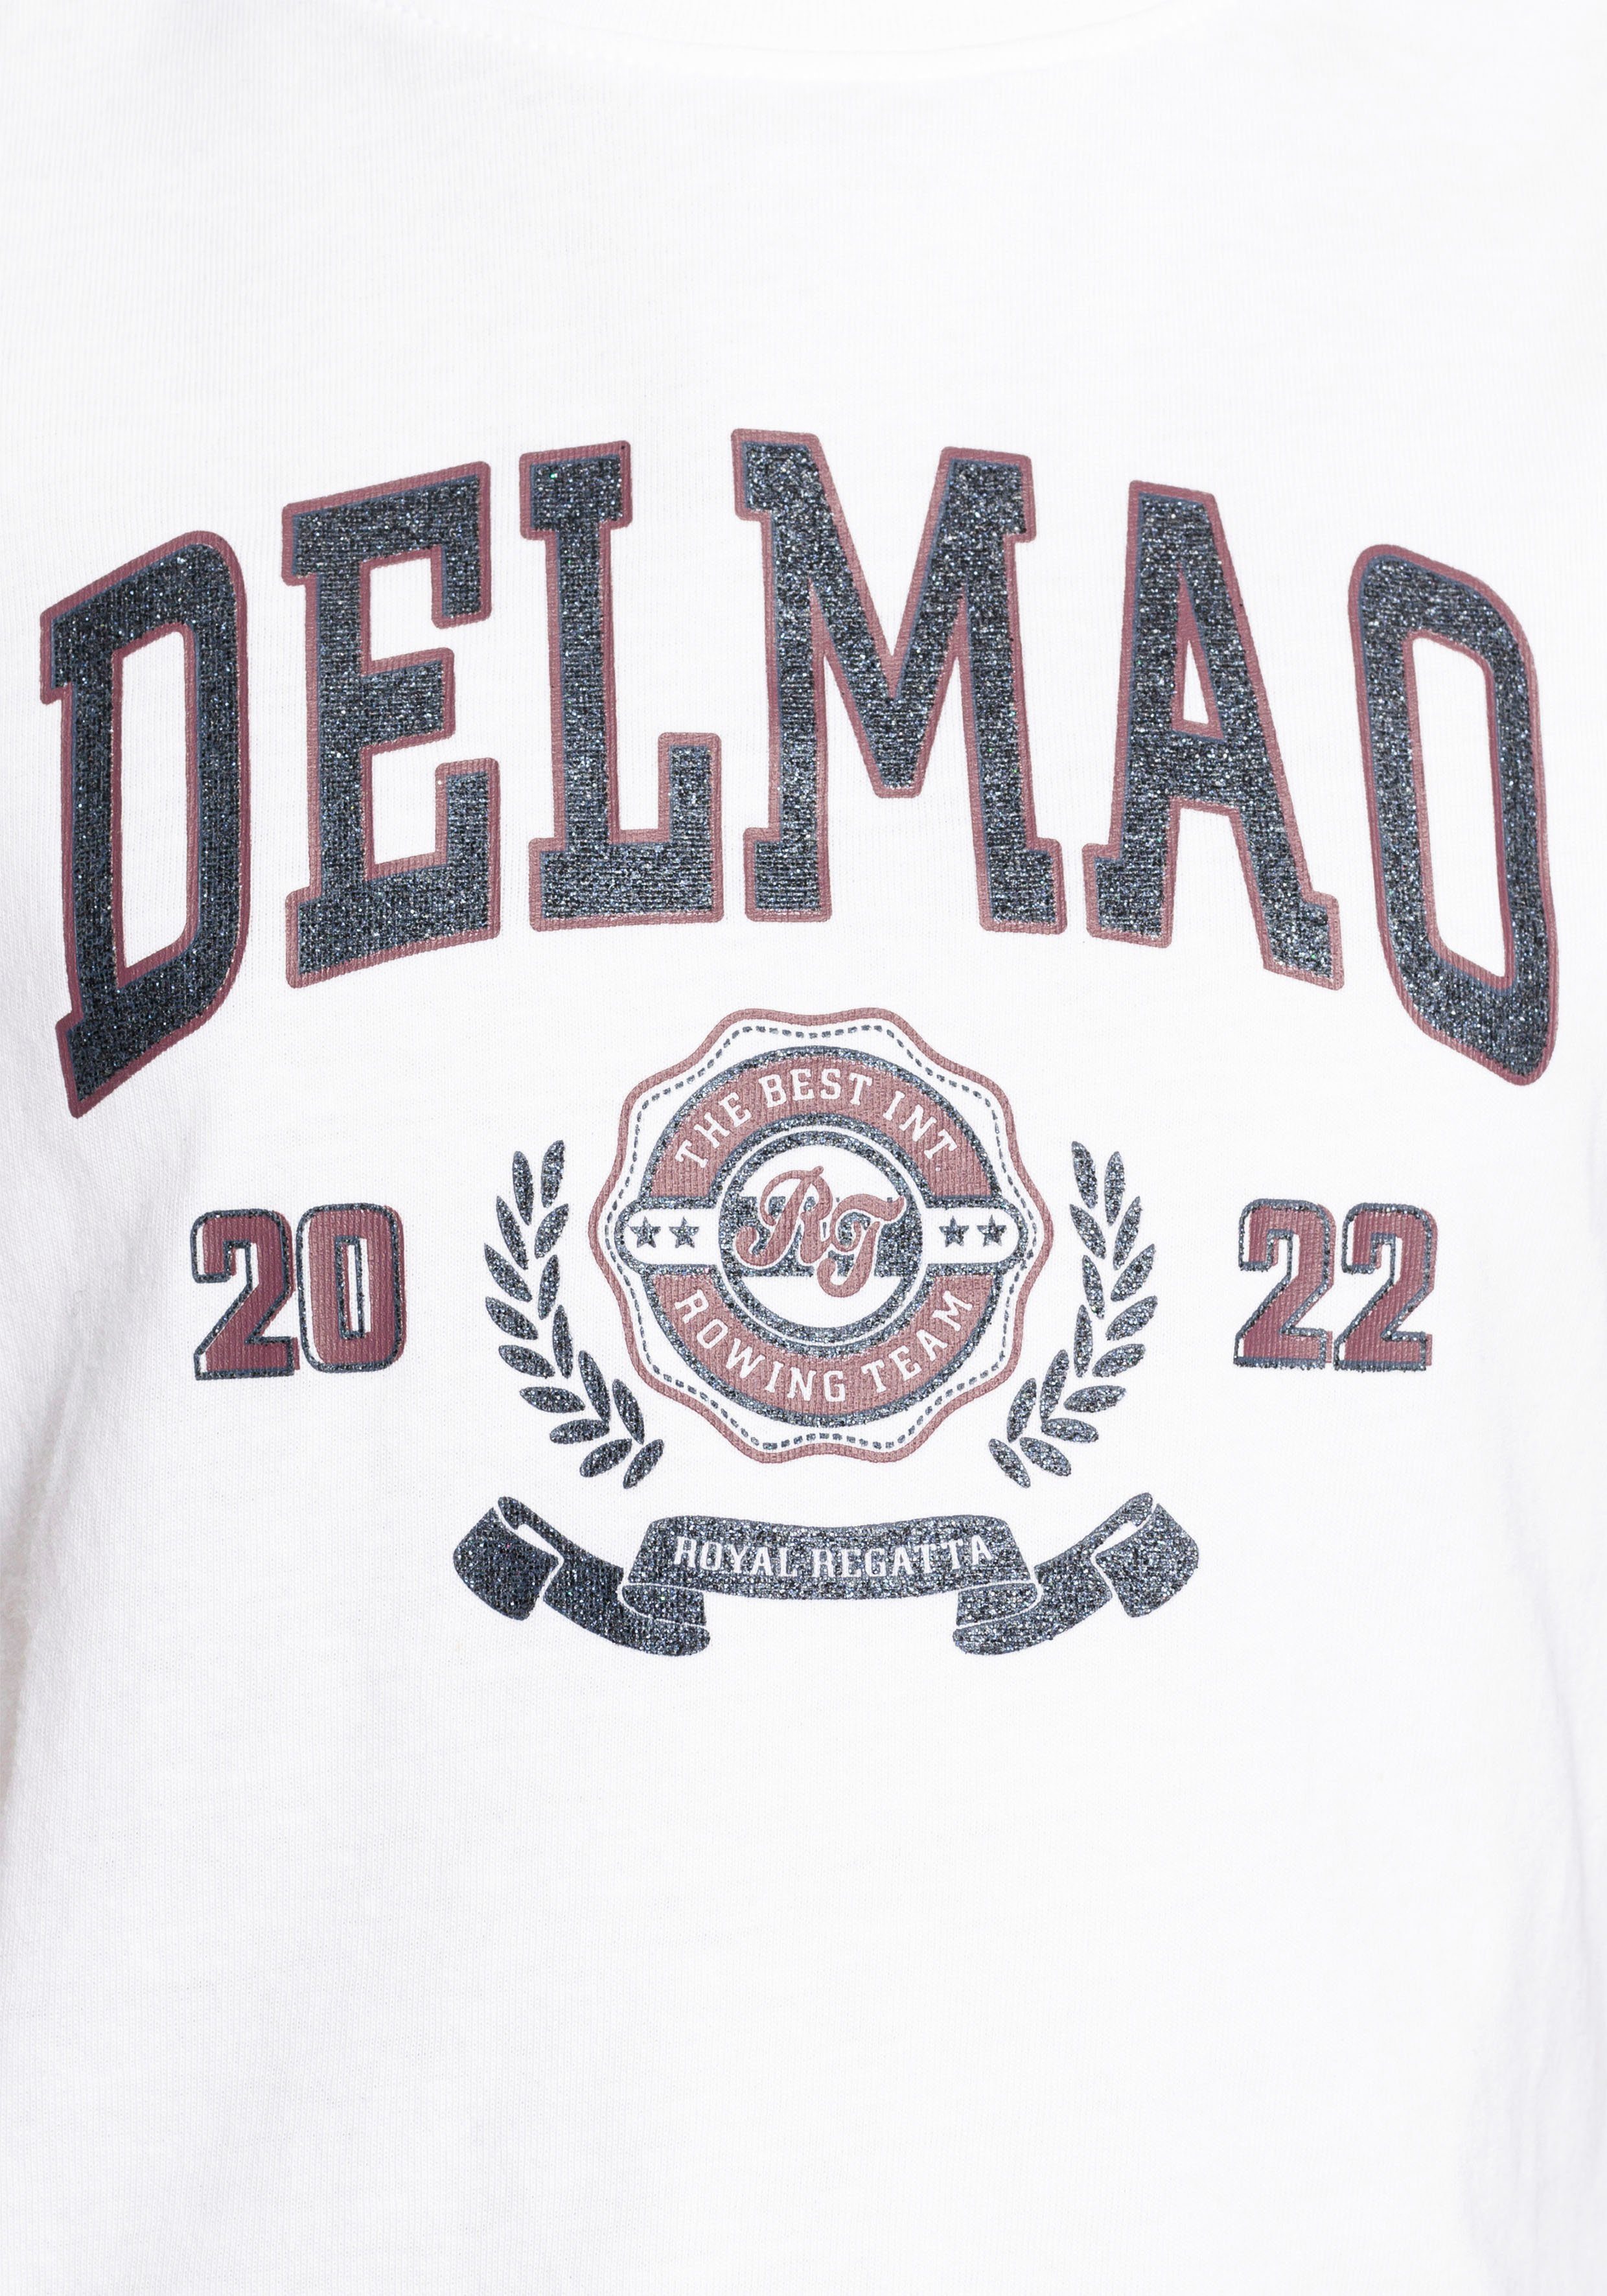 DELMAO T-Shirt für Mädchen, mit Delmao-Glitzer-Print großem